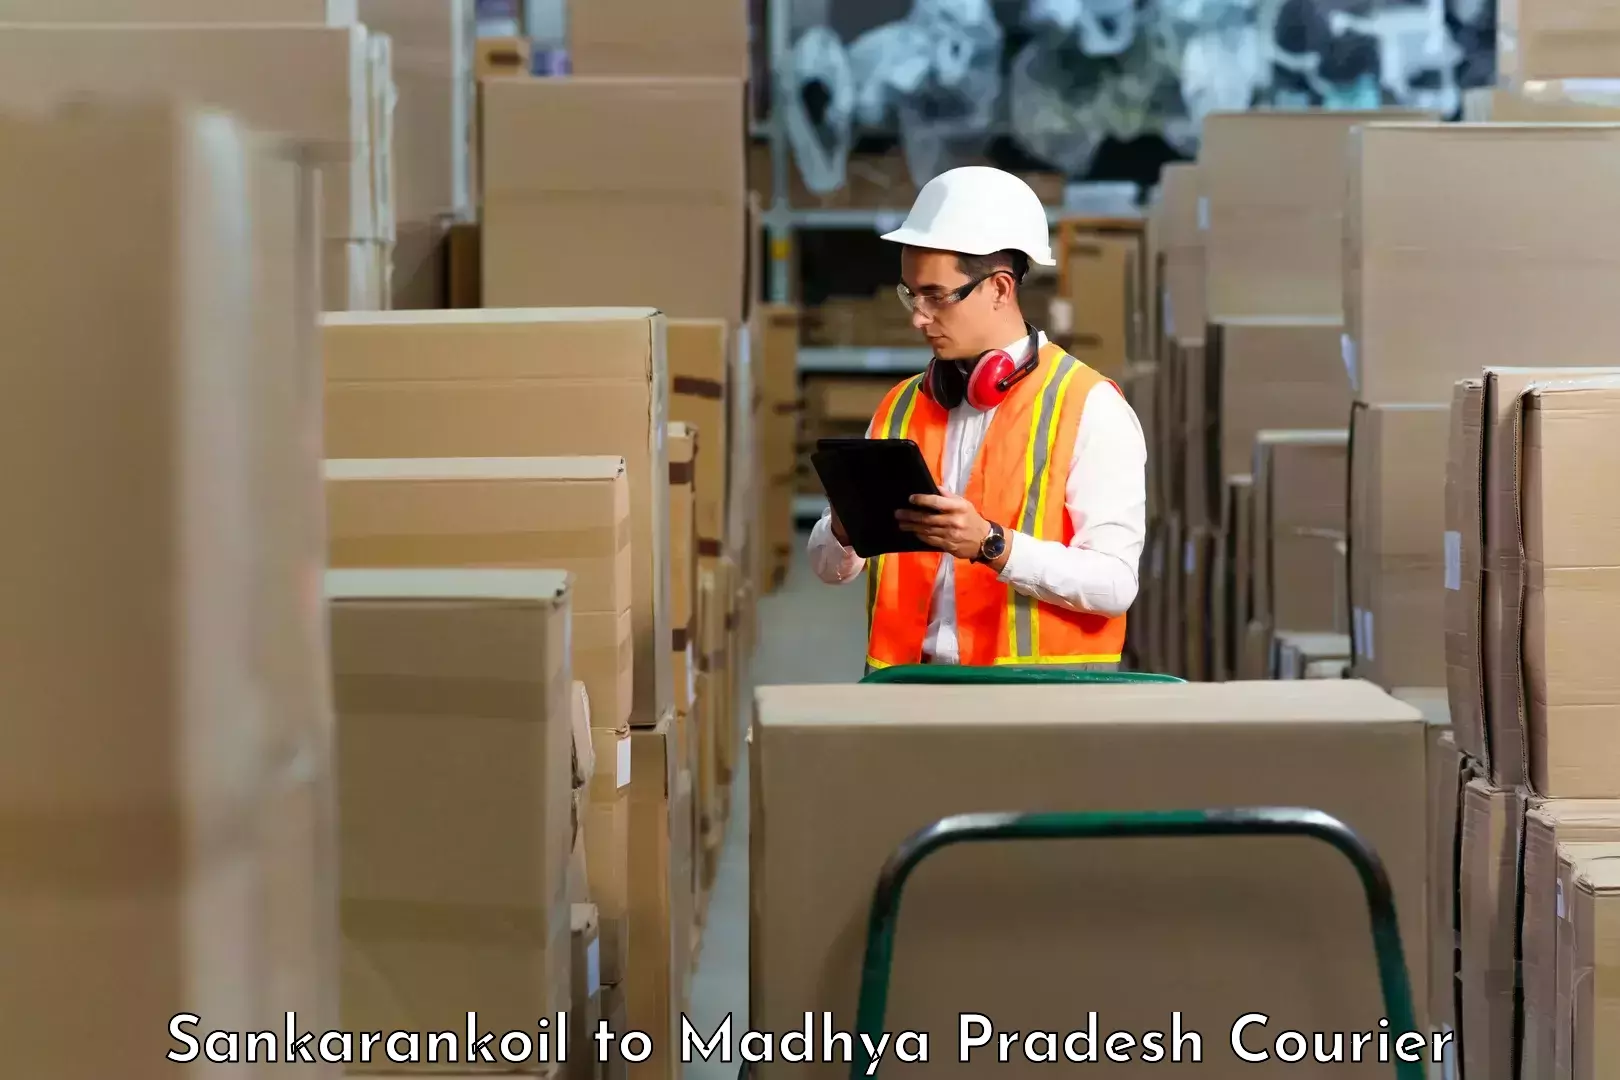 Global parcel delivery Sankarankoil to Chitrangi